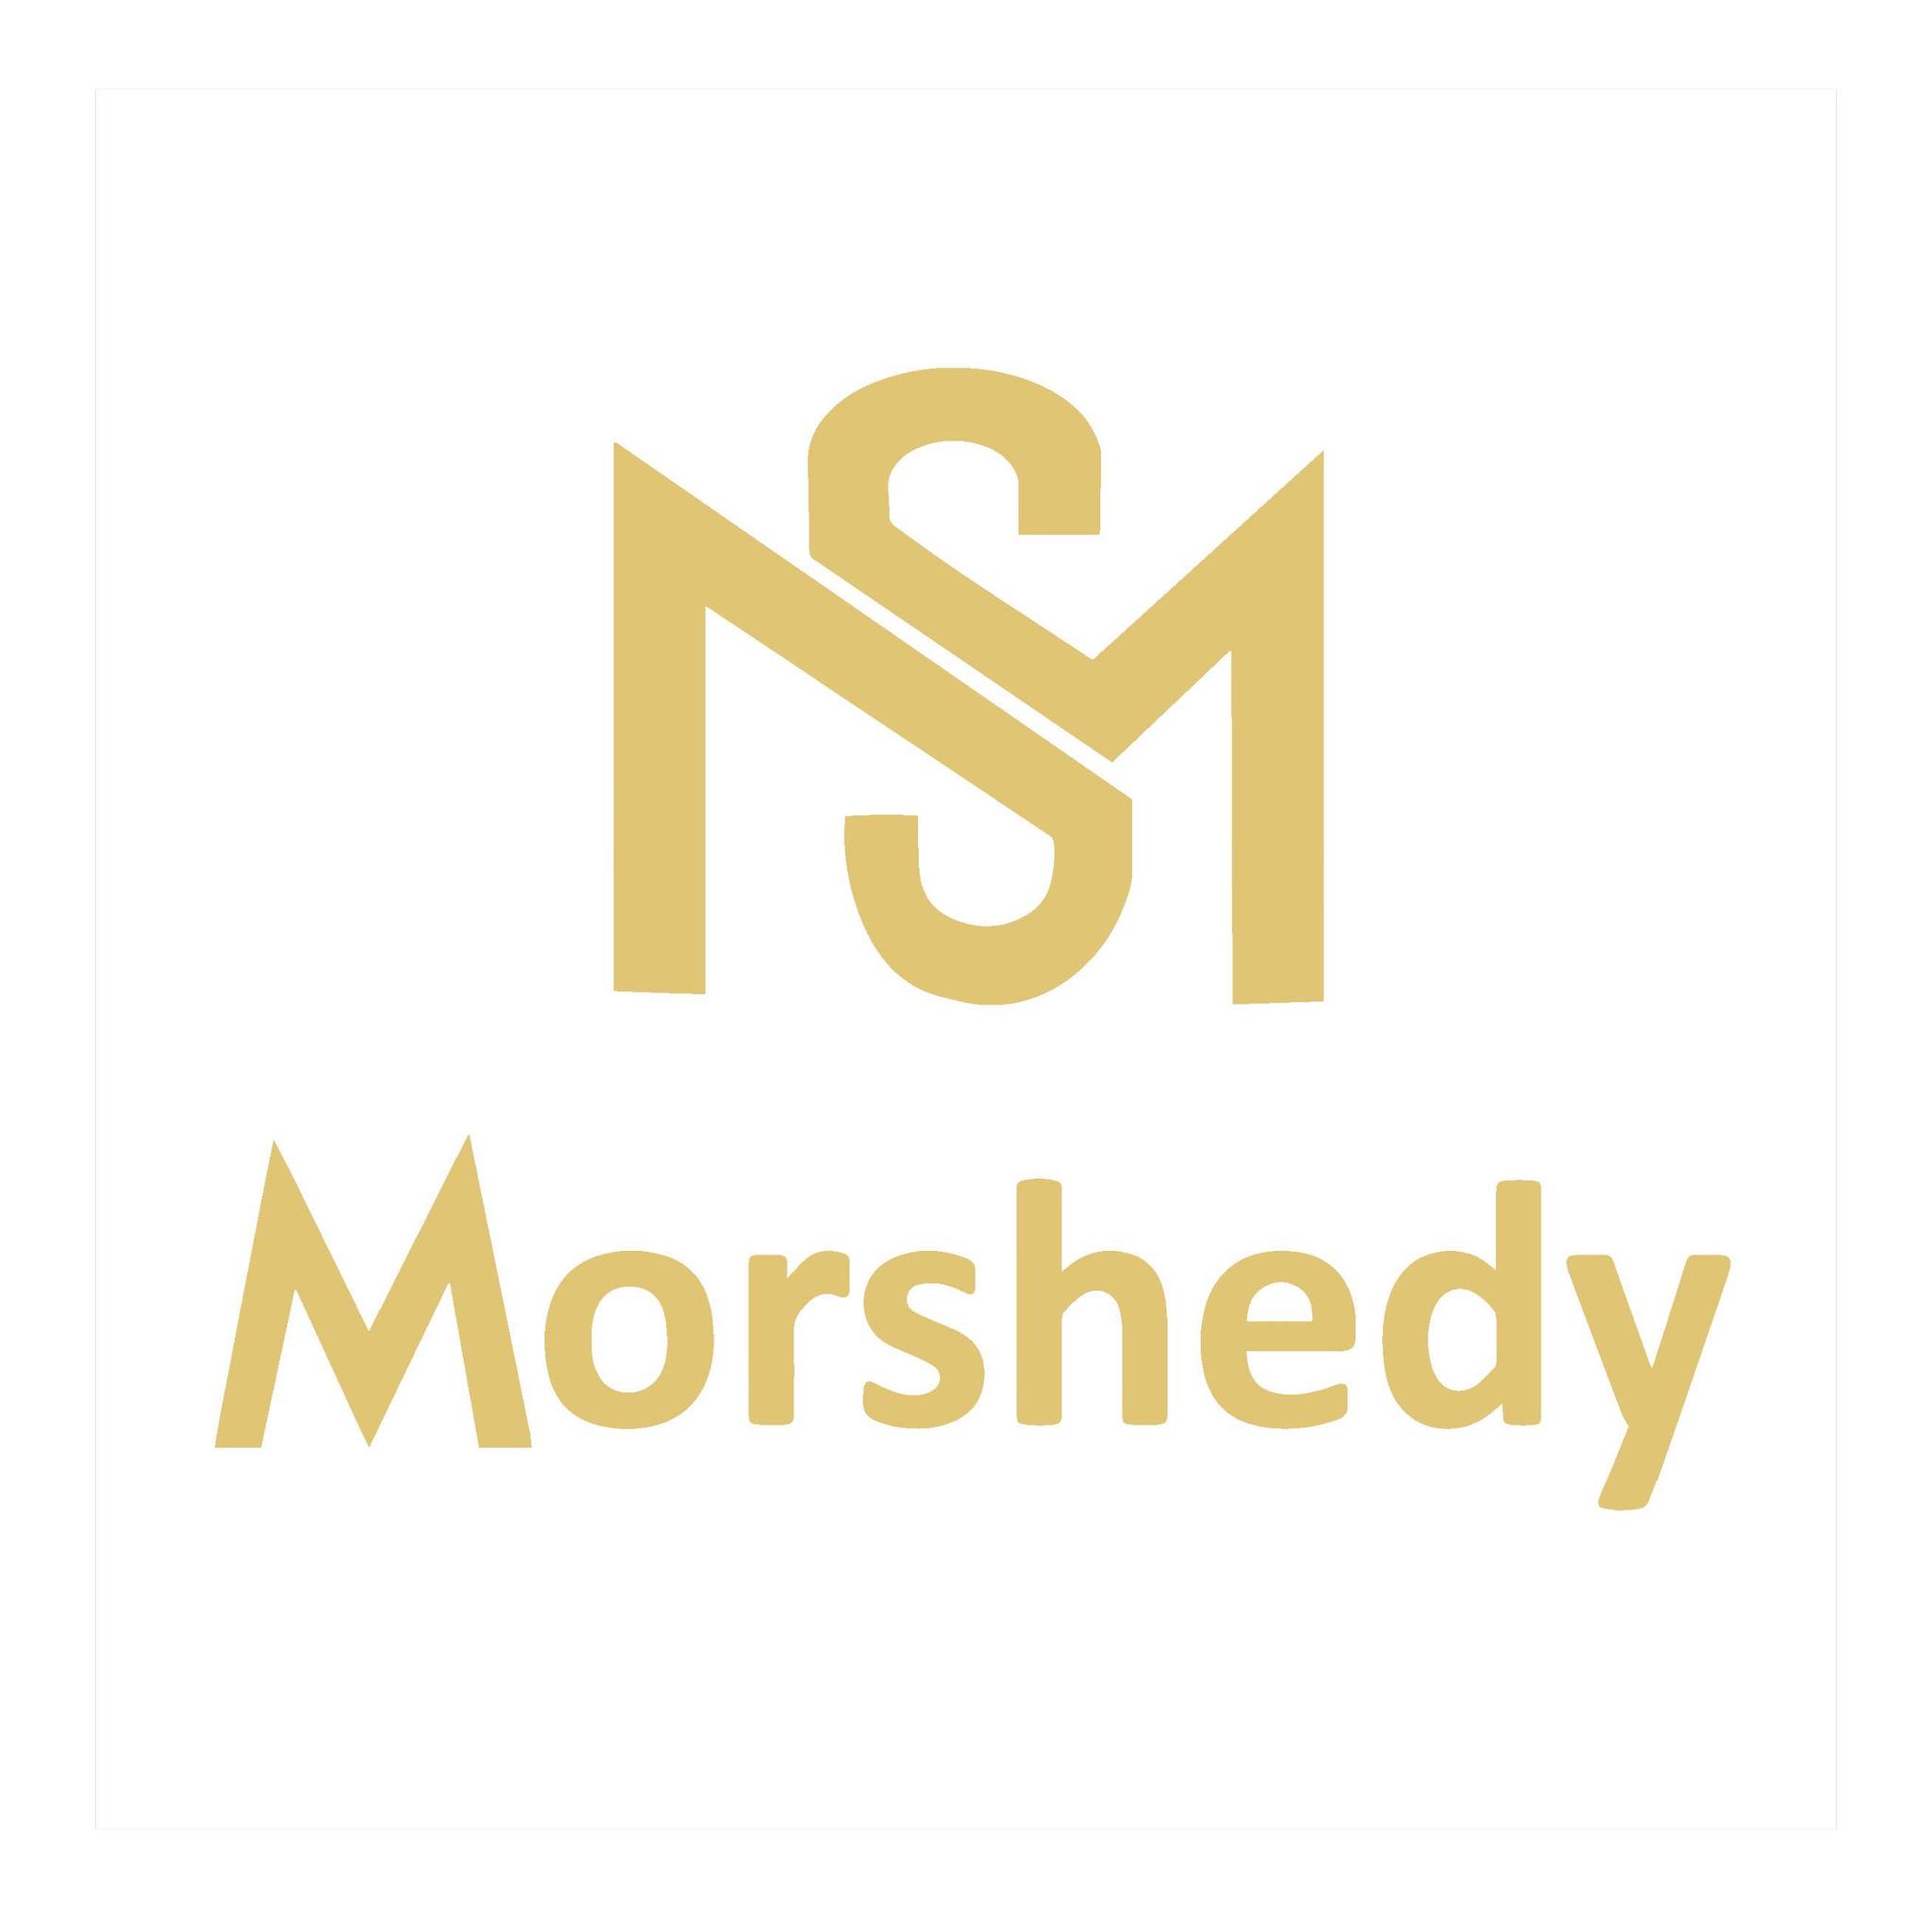 Morshedy